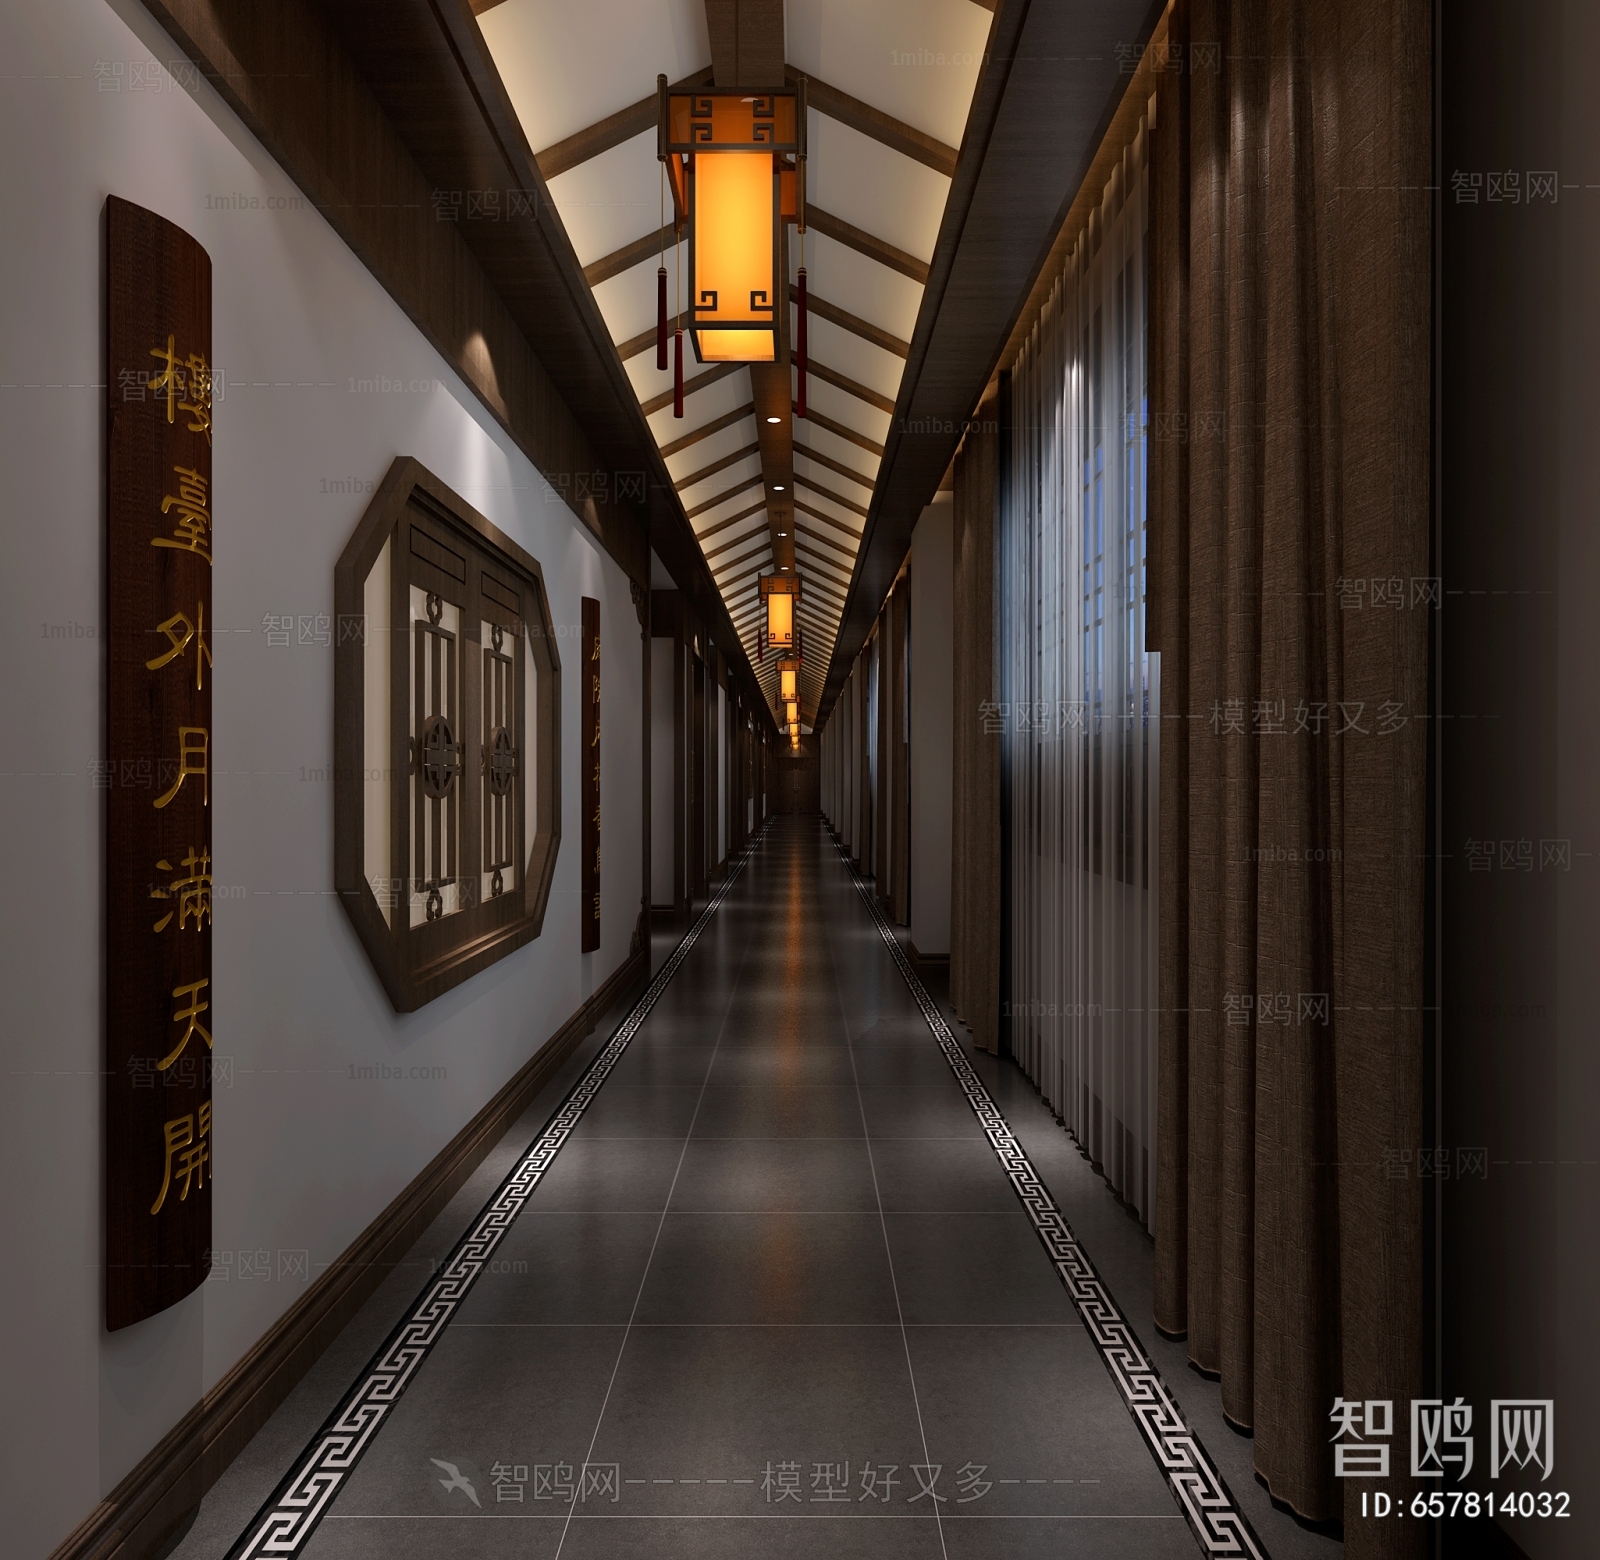 Chinese Style Corridor